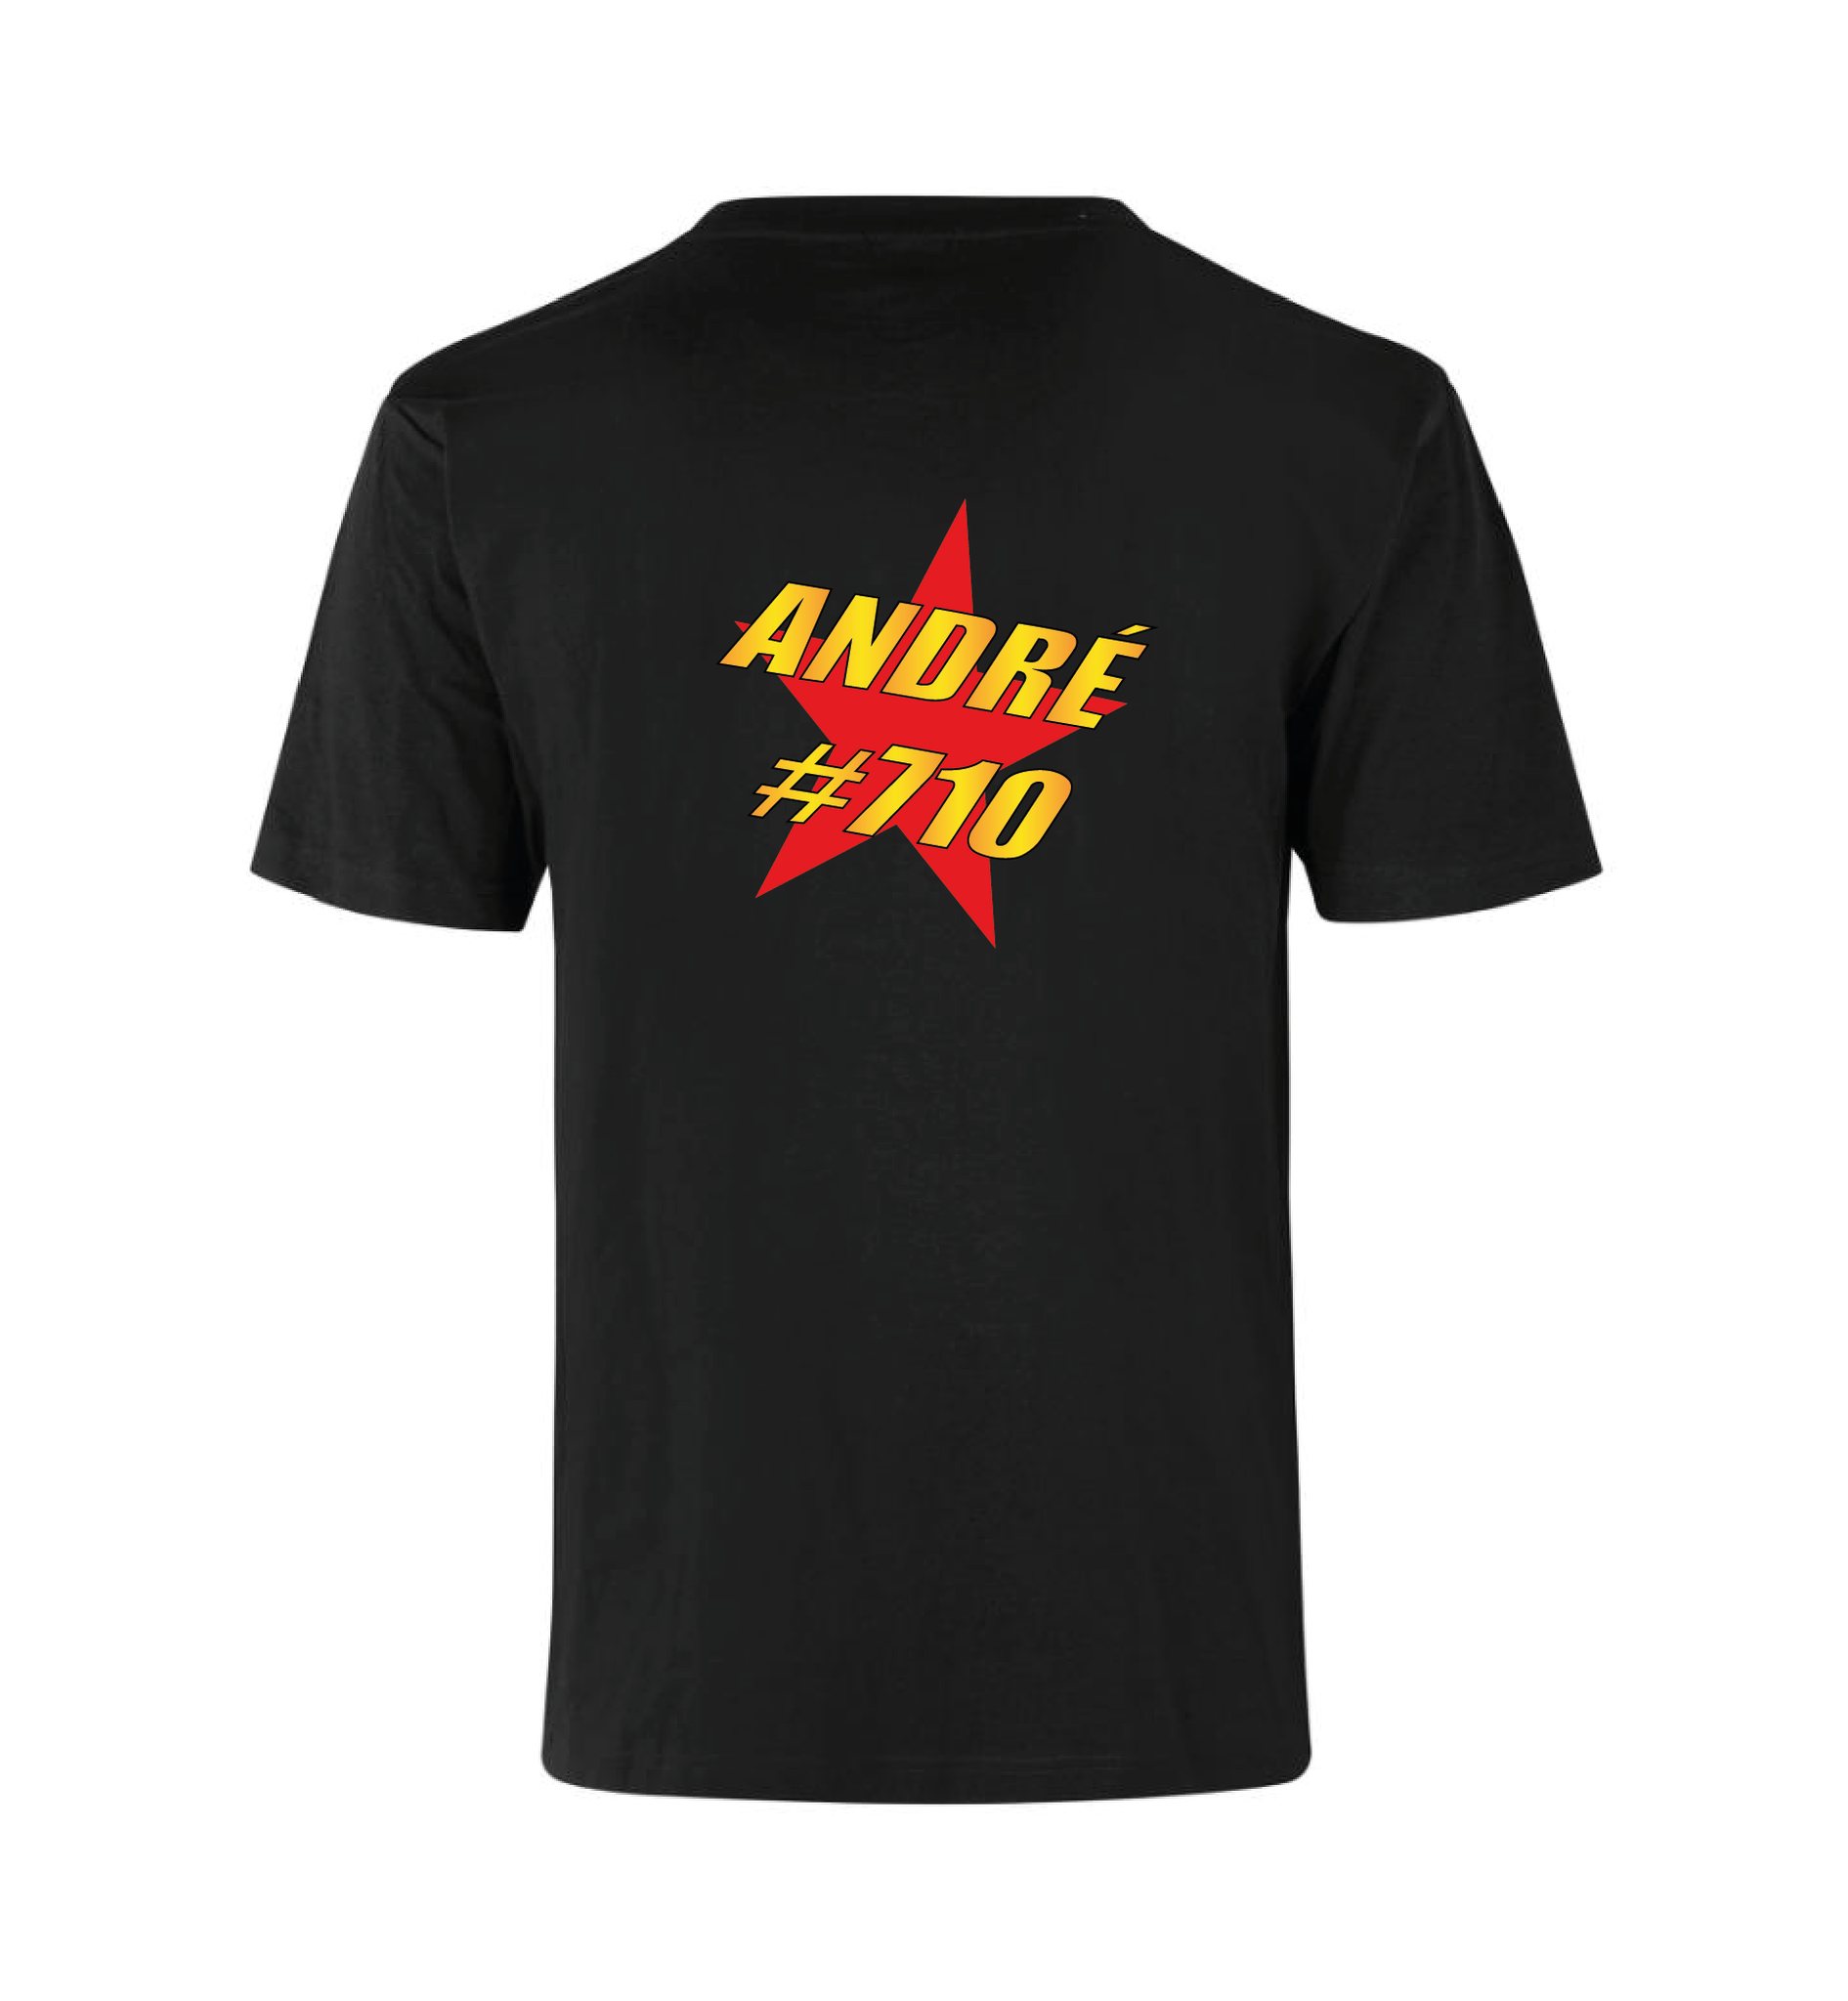 André #710 T-Shirt